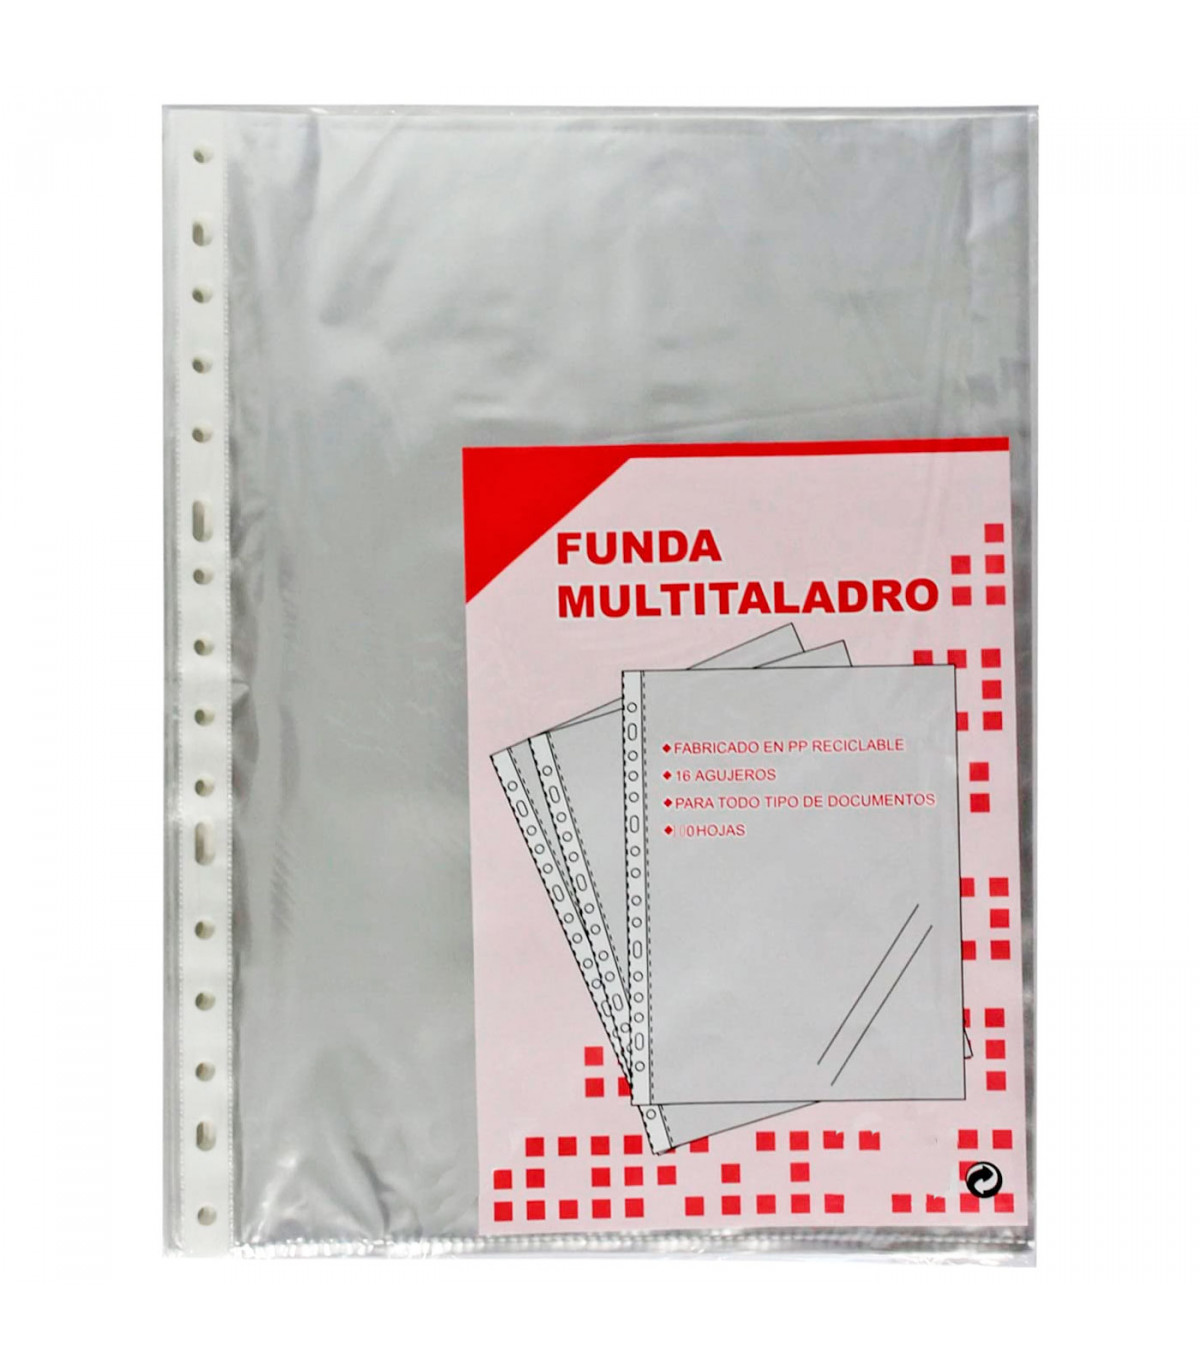 Pack de 100 fundas de plástico transparente A4, multitaladro, 16 agujeros,  ordenar y clasificar apuntes, documentos